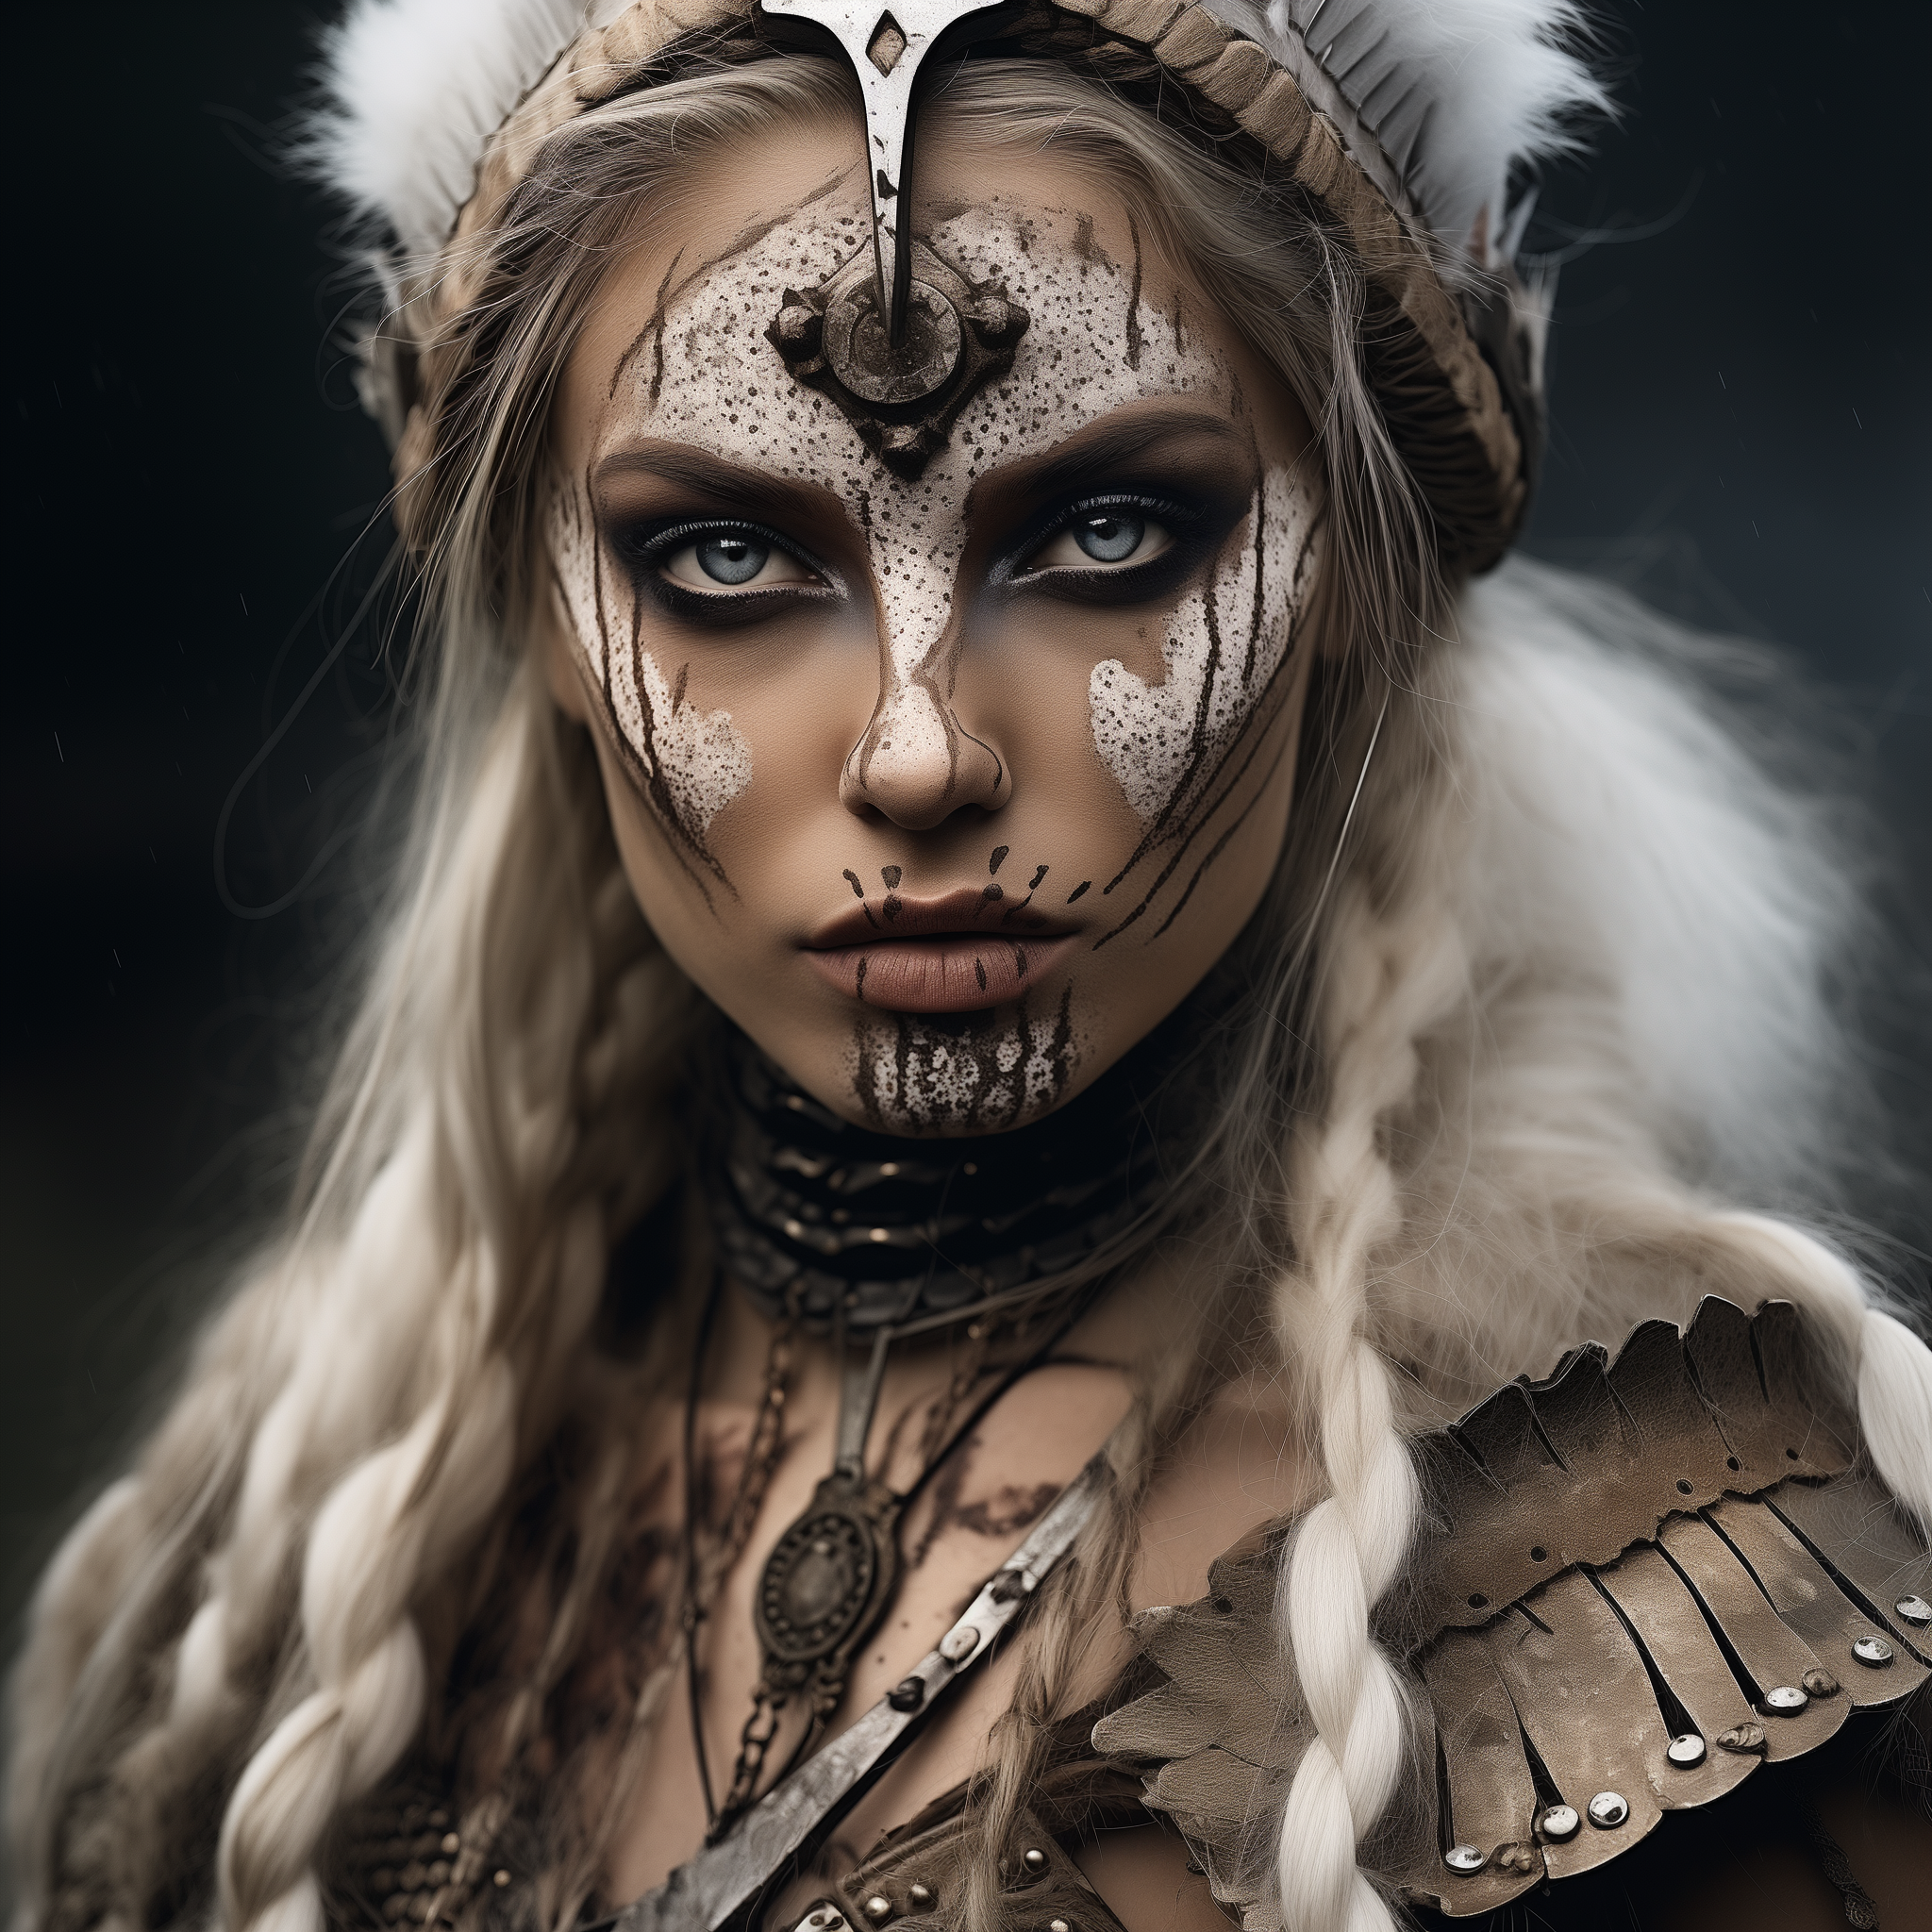 orestis_nordic_viking_queen_warrior_Scandinavian_face_paint_bon_84e4708d-759c-4161-9d9a-3229514b8e44.png